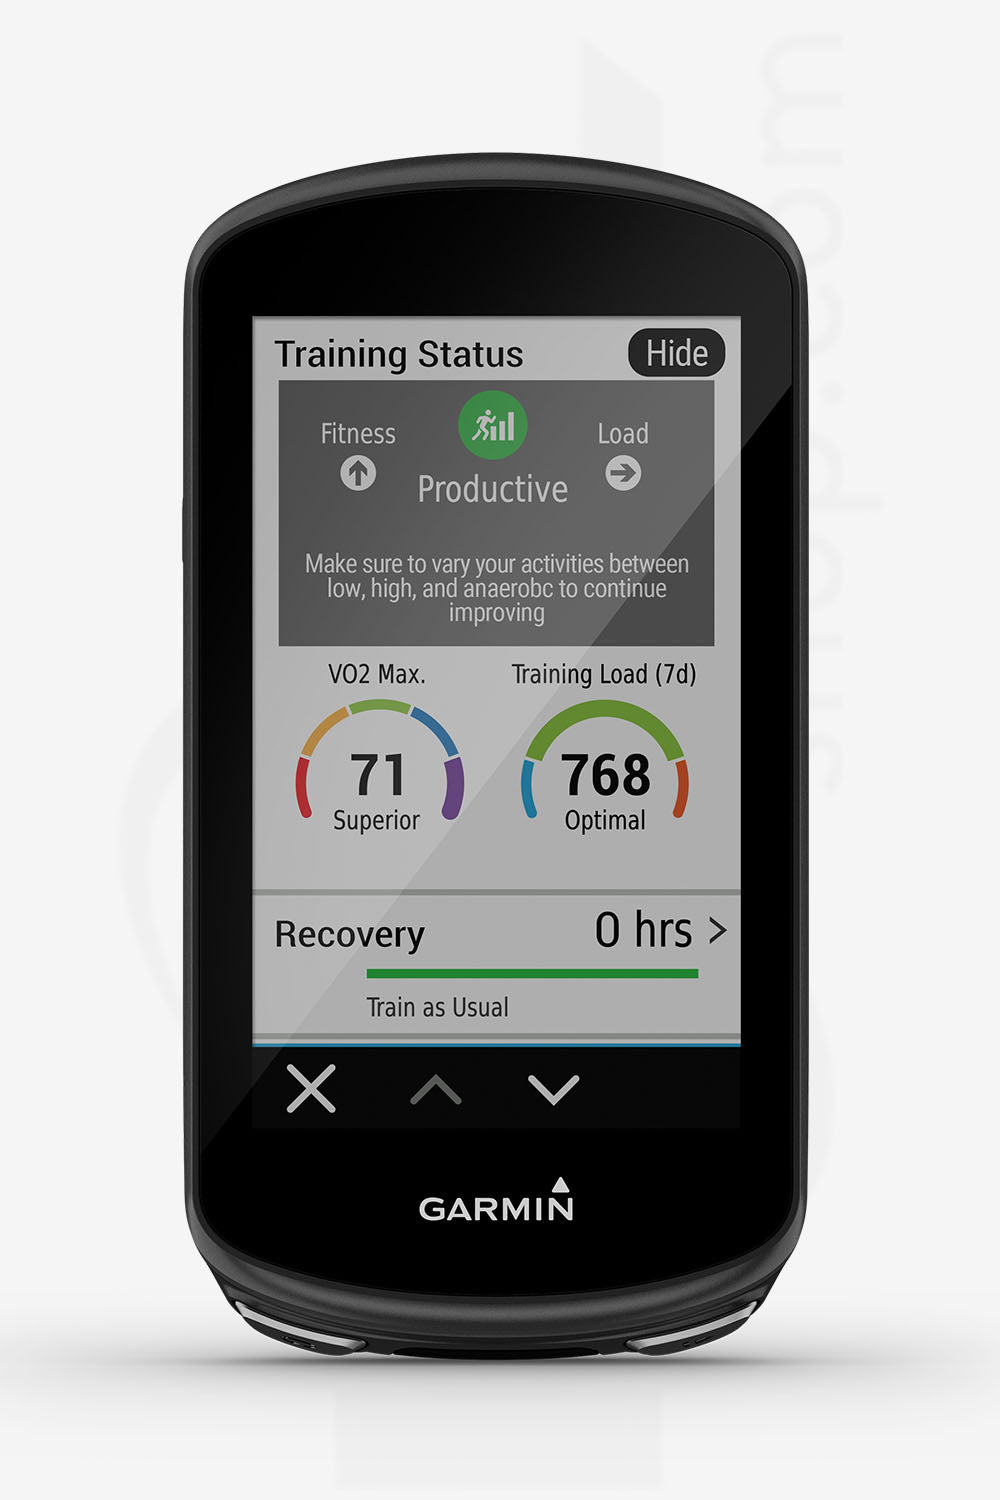 GPS GARMIN - Edge® 1030 Plus Bundle